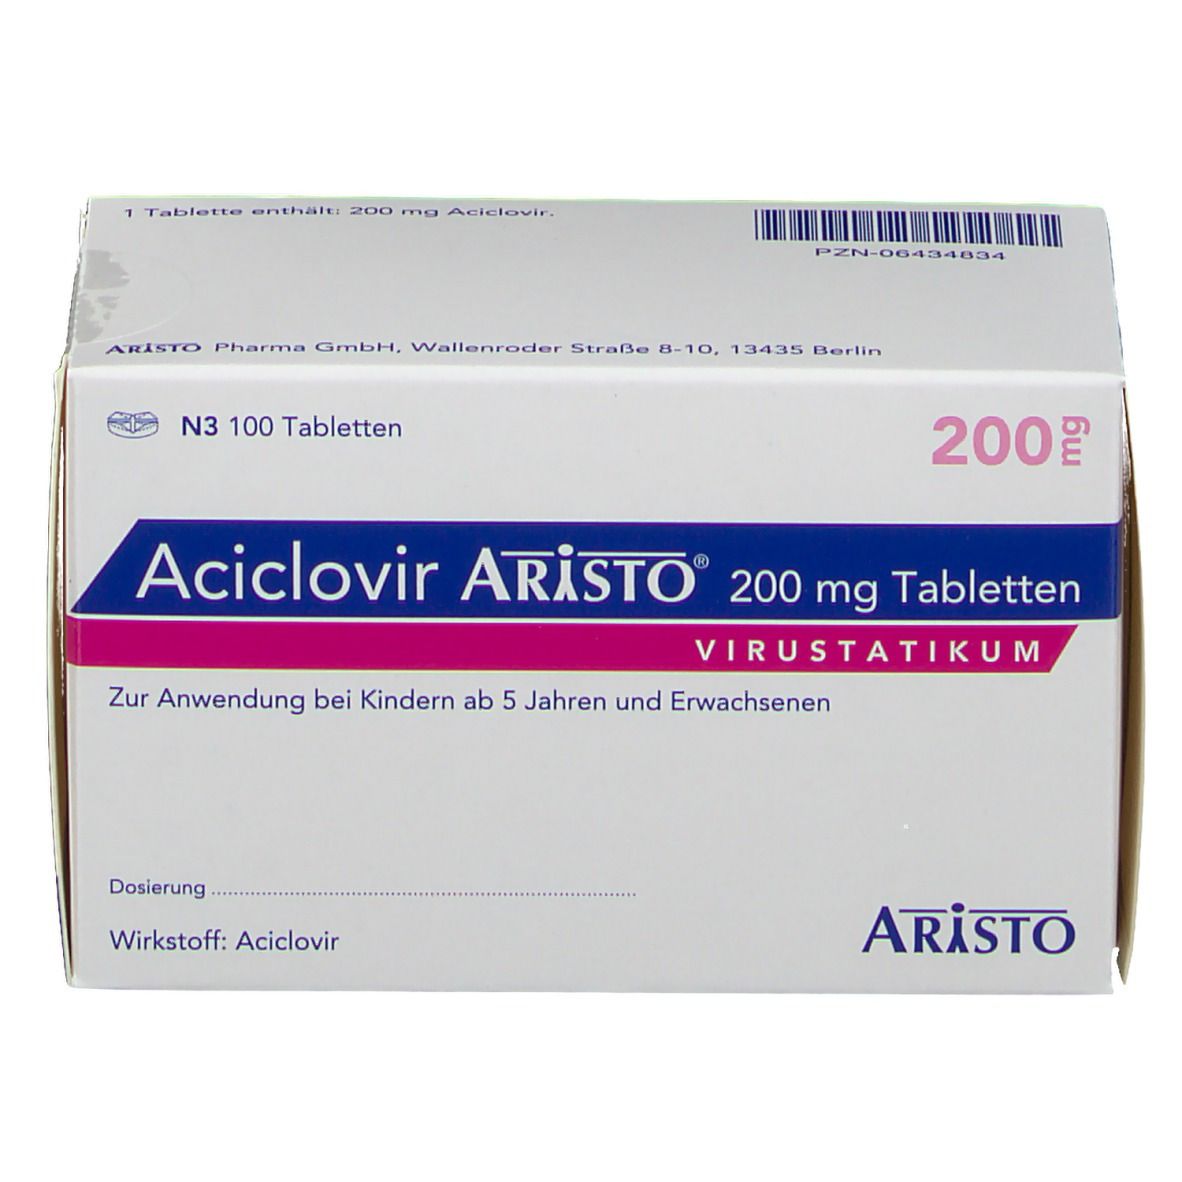 Aciclovir Aristo® 200 mg